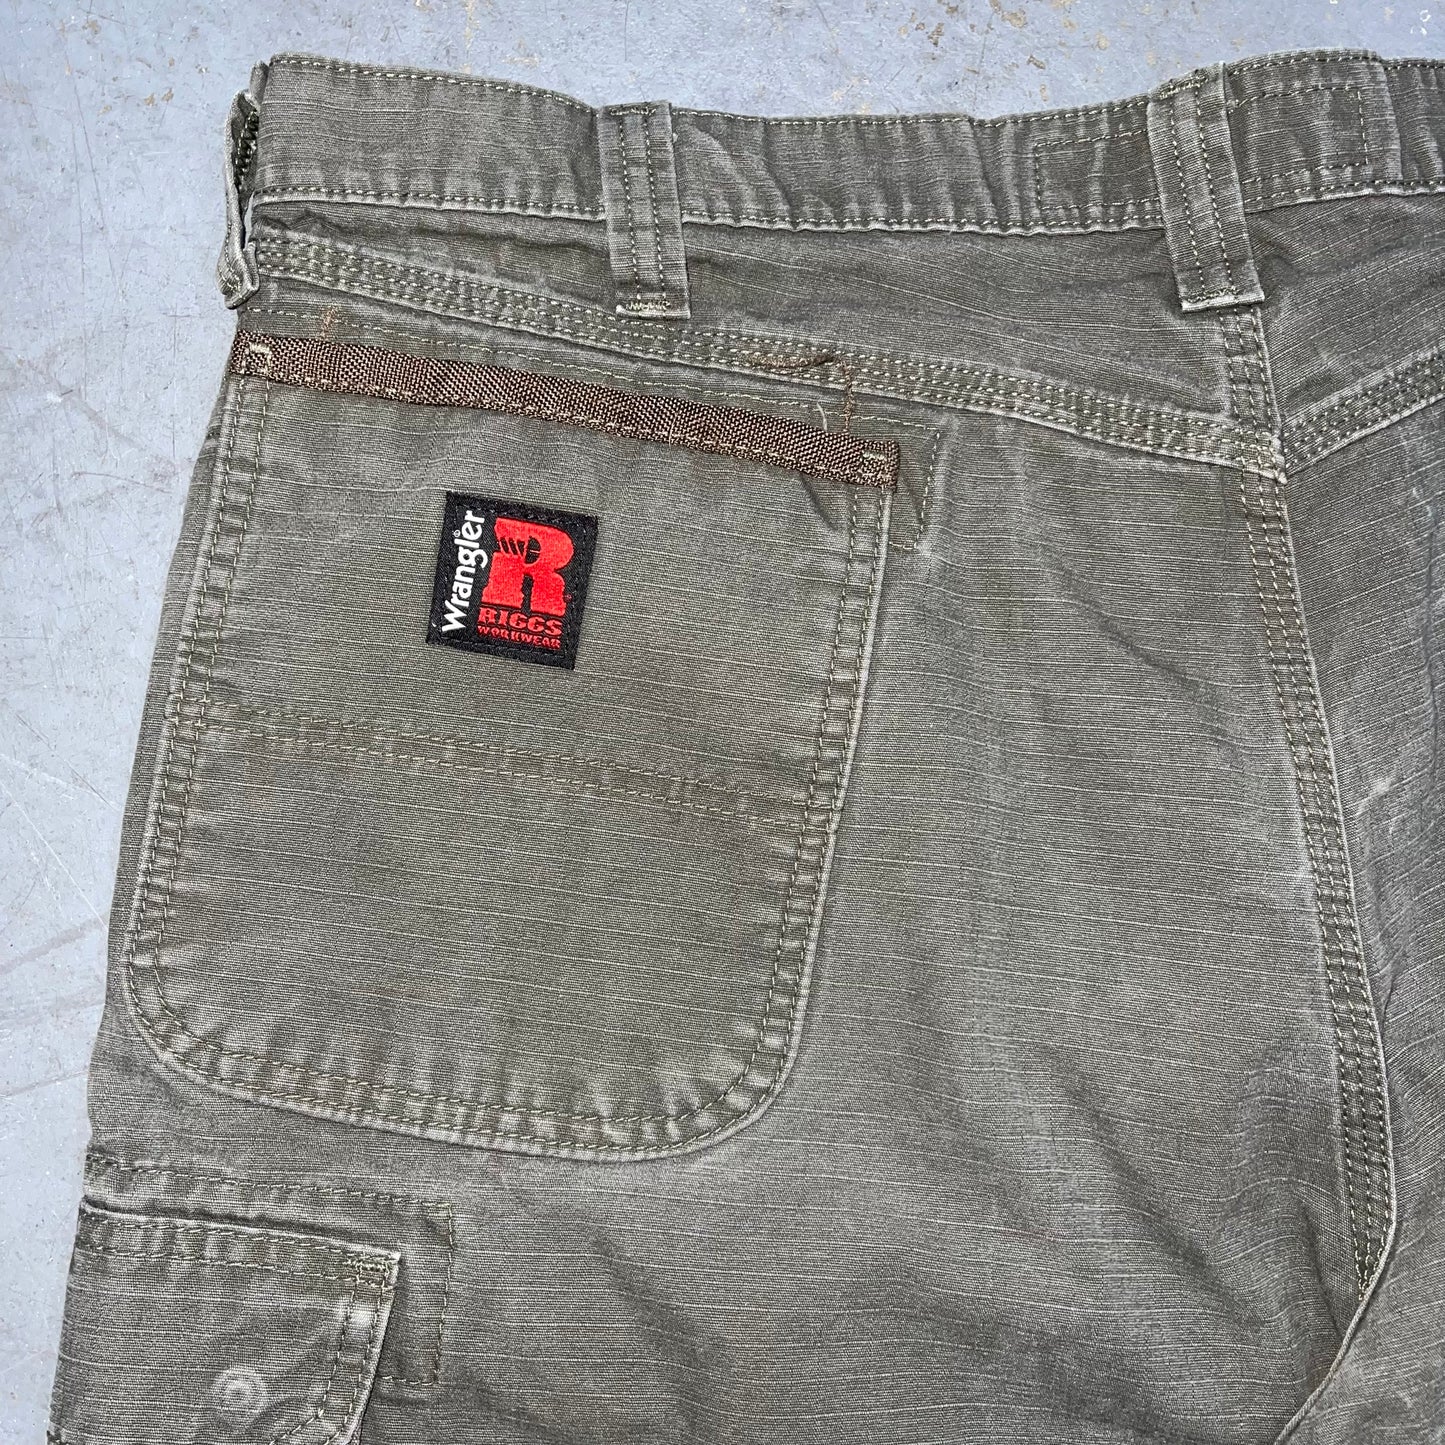 Wrangler Riggs Workwear 3W060LD Cargo Pants. Size 38x30